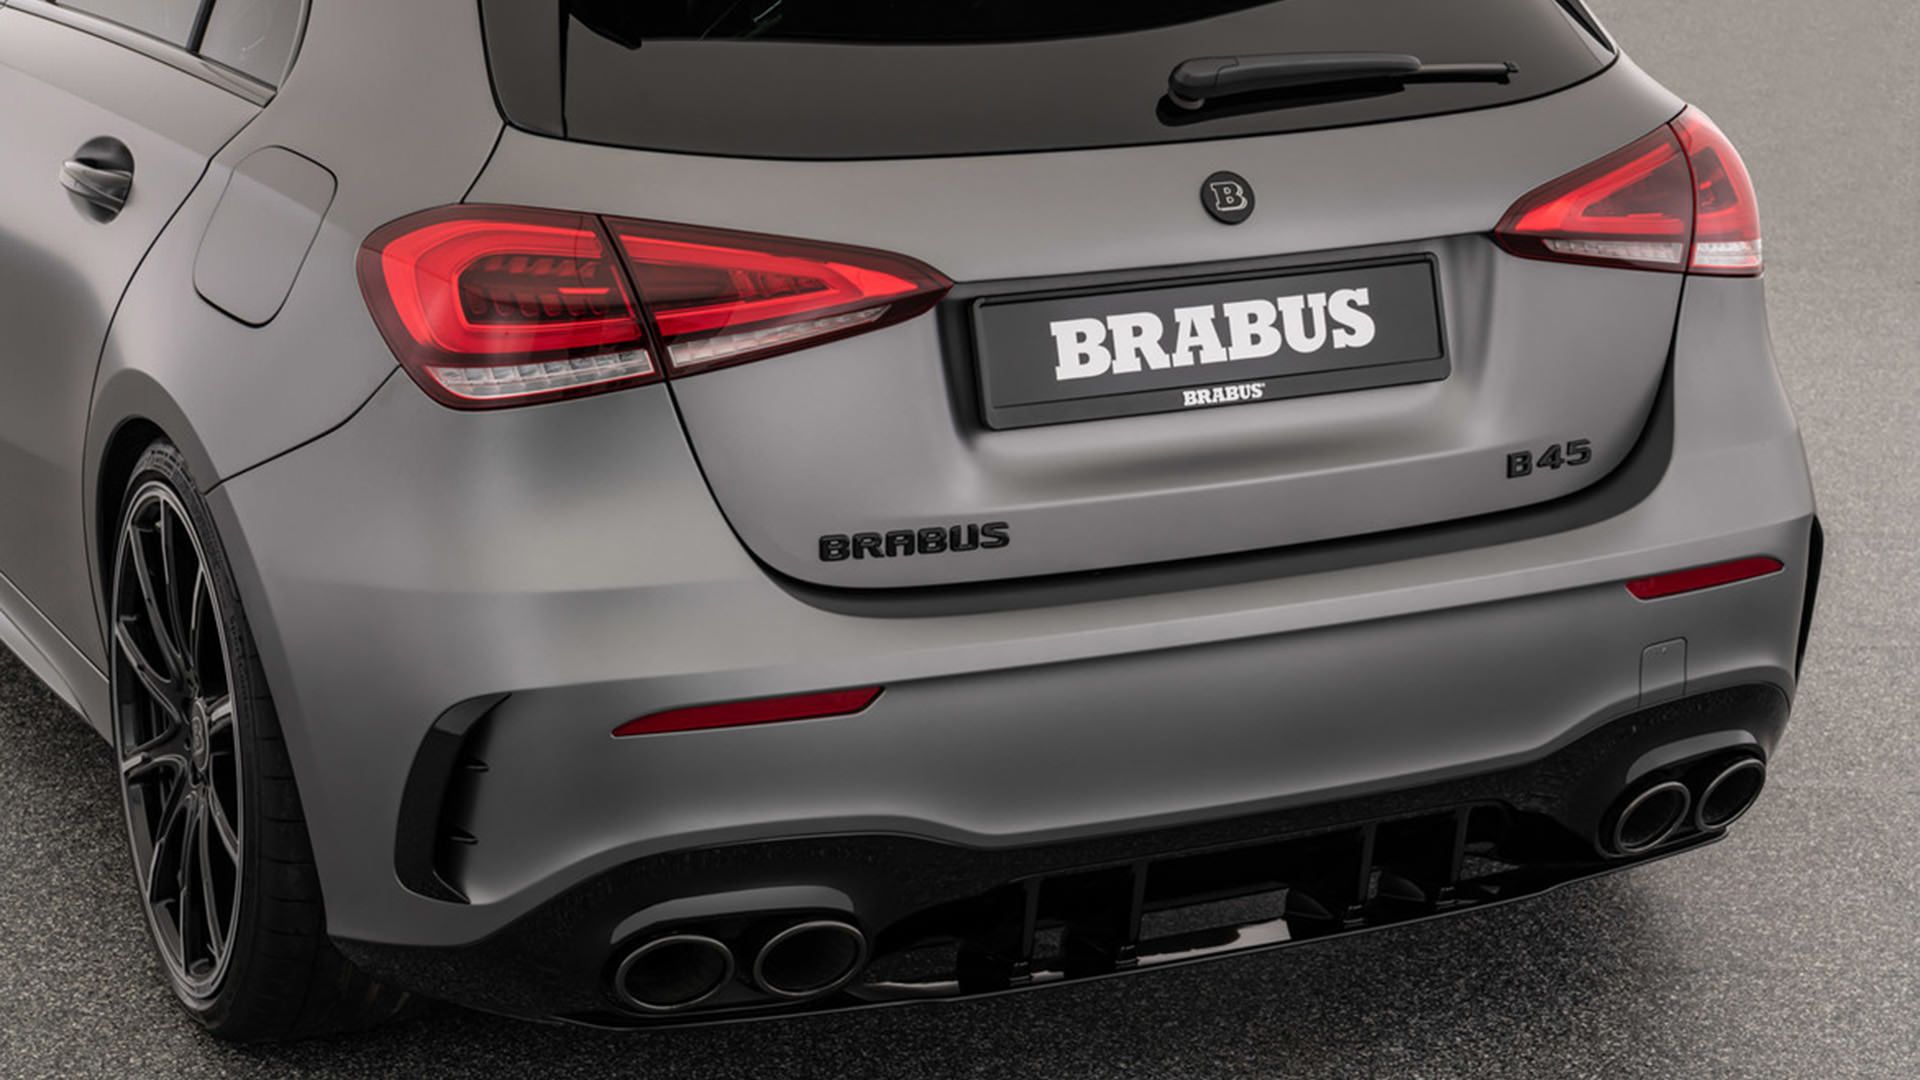 مرجع متخصصين ايران خروجي اگزوز مرسدس آ ام گ تيونينگ برابوس / Brabus Mercedes-AMG A45 S نقره اي رنگ